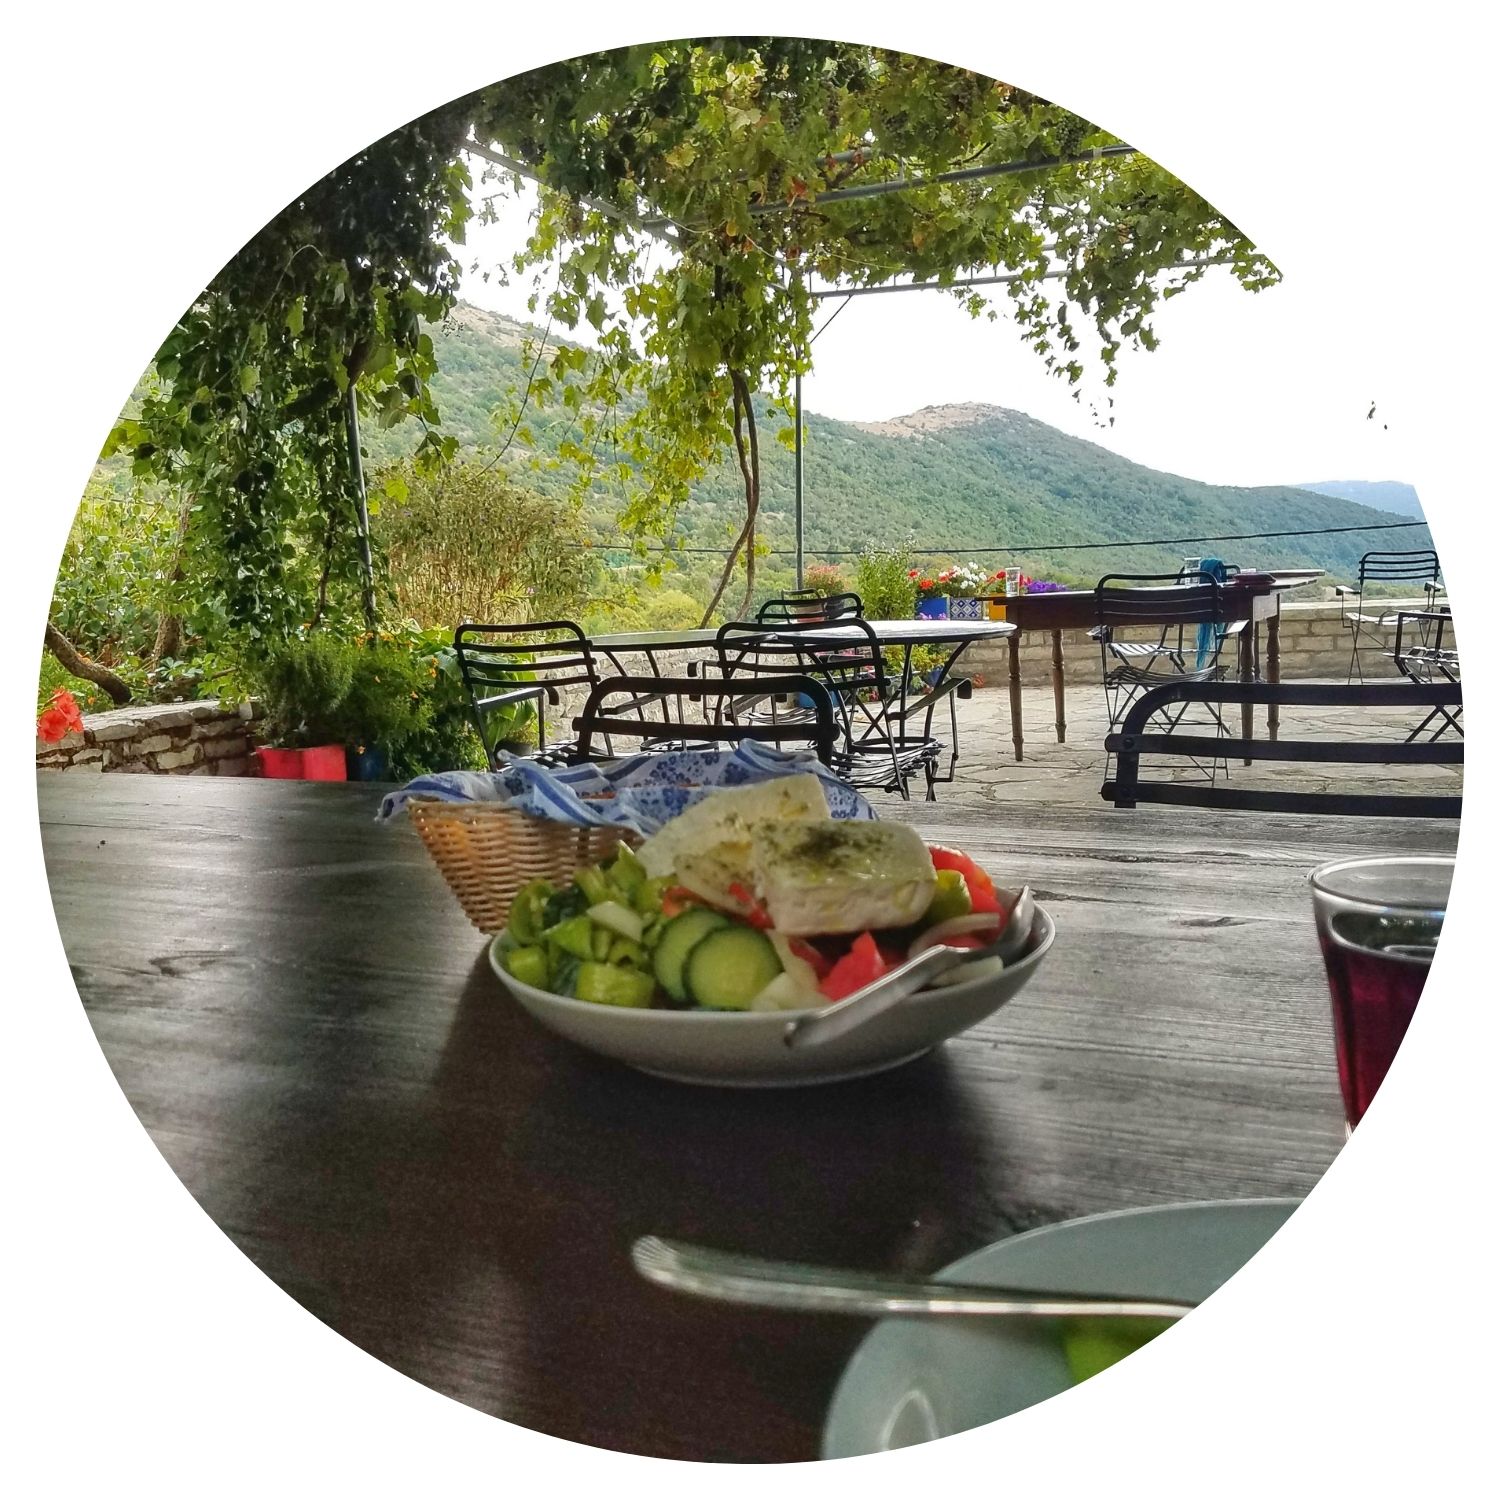 Une salade grecque typique servie sur une terrasse offrant une vue pittoresque sur la nature verdoyante et les petites montagnes, ombragée par des feuilles d'arbre.